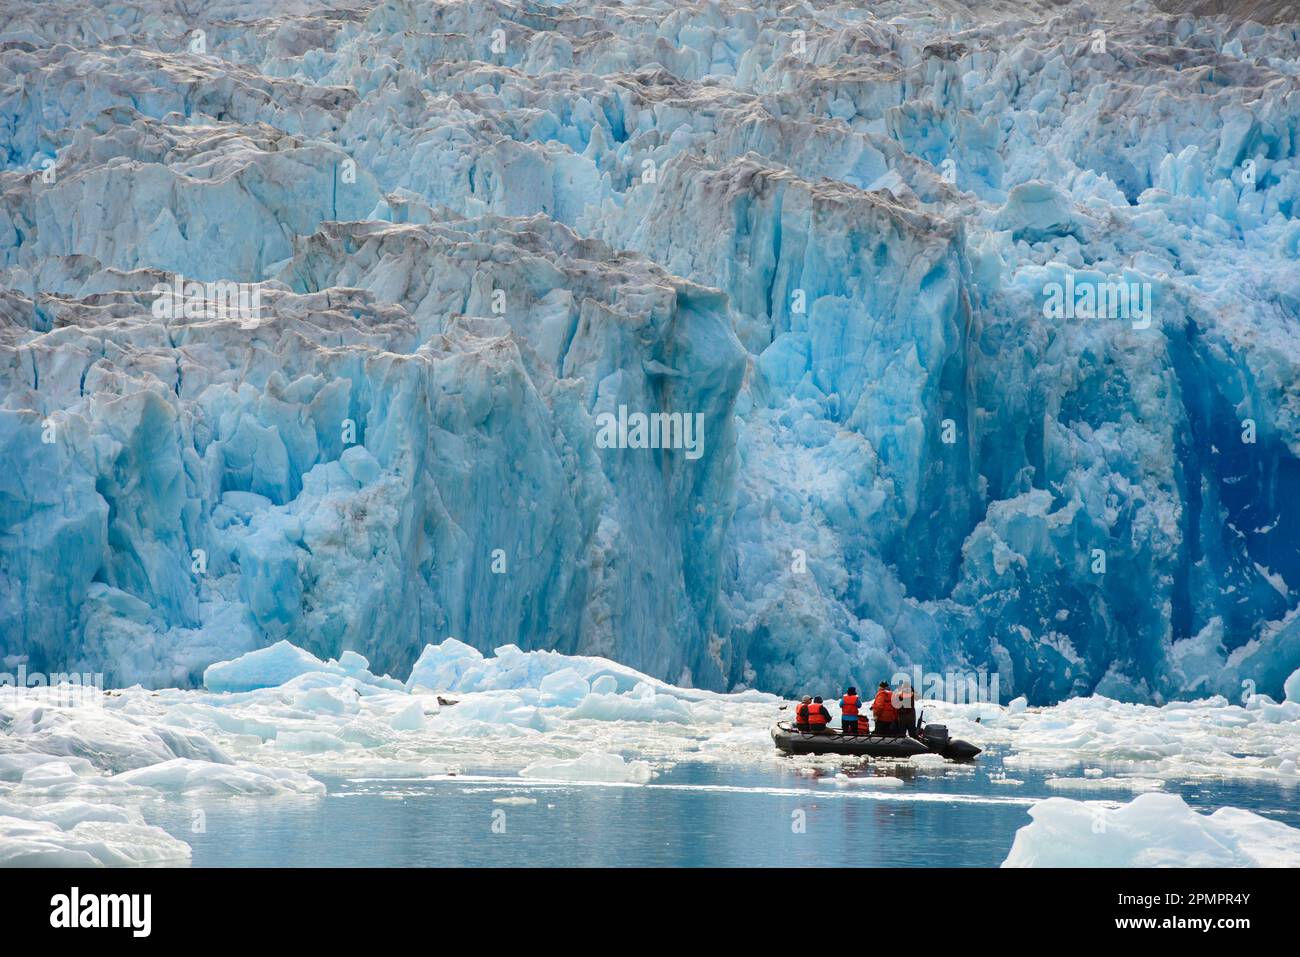 Ecoturisti in una zattera gonfiabile osservano il South Sawyer Glacier nel passaggio interno, Tracy Arm-Fords Terror Wilderness Foto Stock